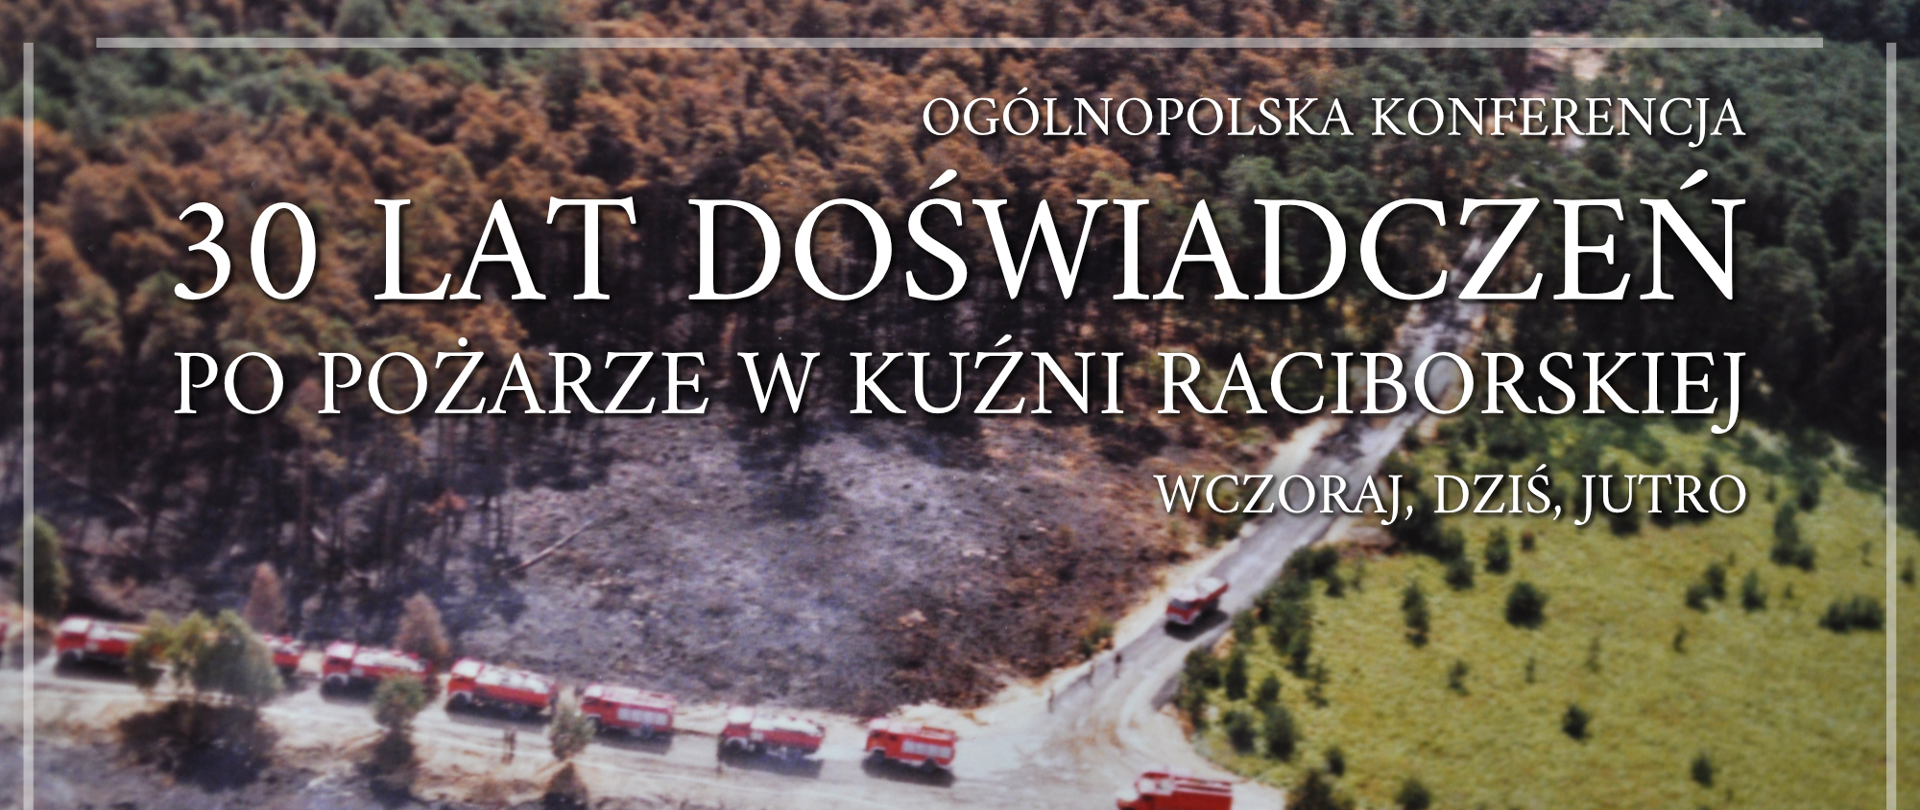 Banner internetowy Ogólnopolskiej Konferencji 30 lat doświadczeń po pożarze w Kuźni Raciborskiej - wczoraj, dziś, jutro.